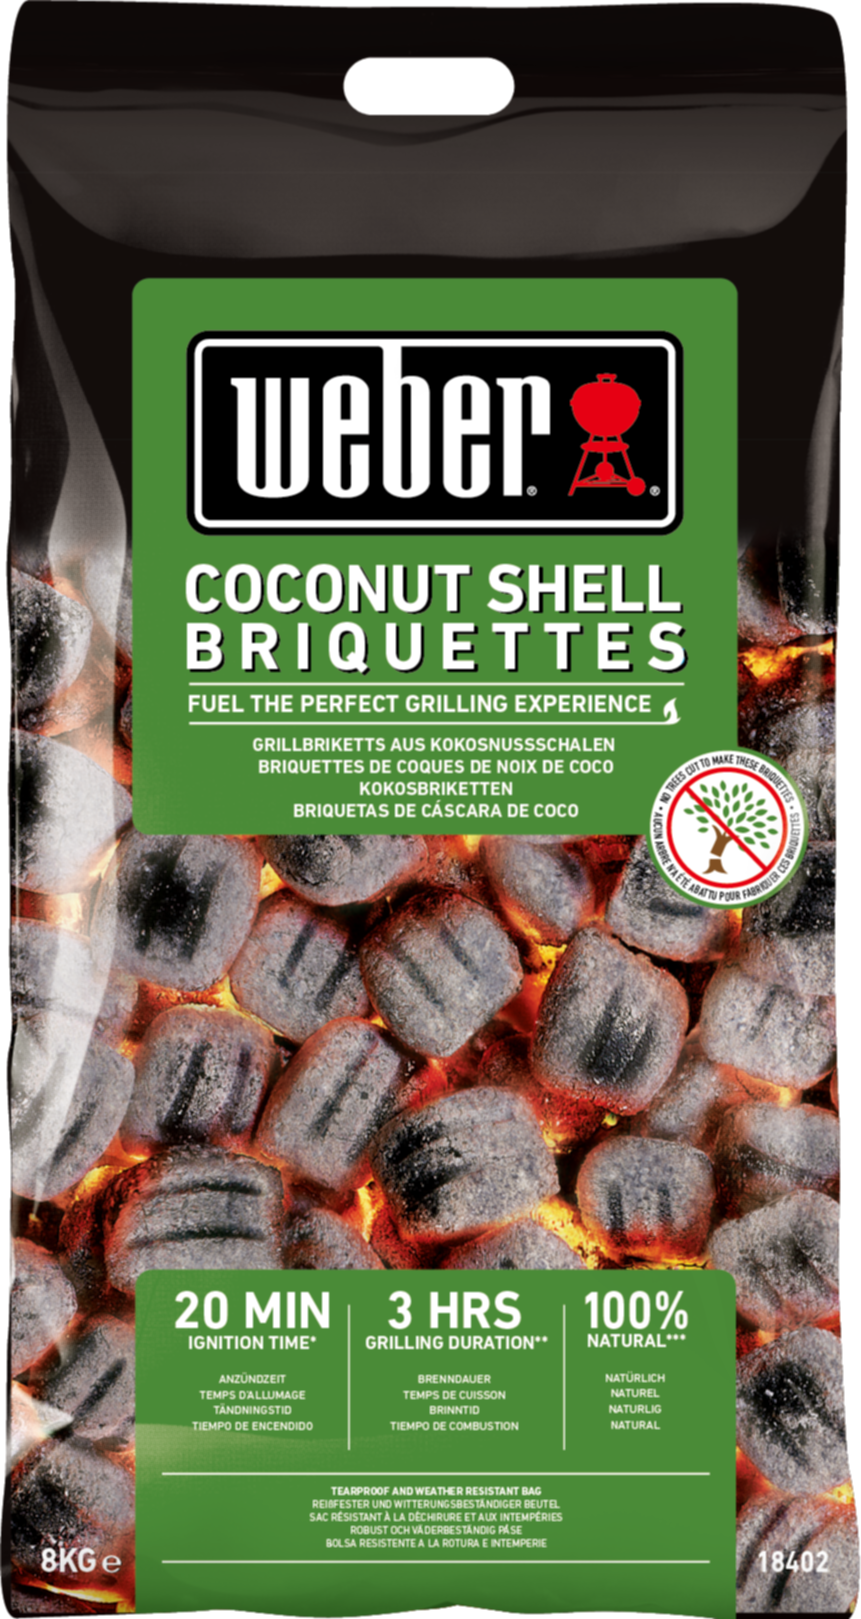 Briquettes coques de noix de coco  8kg - WEBER